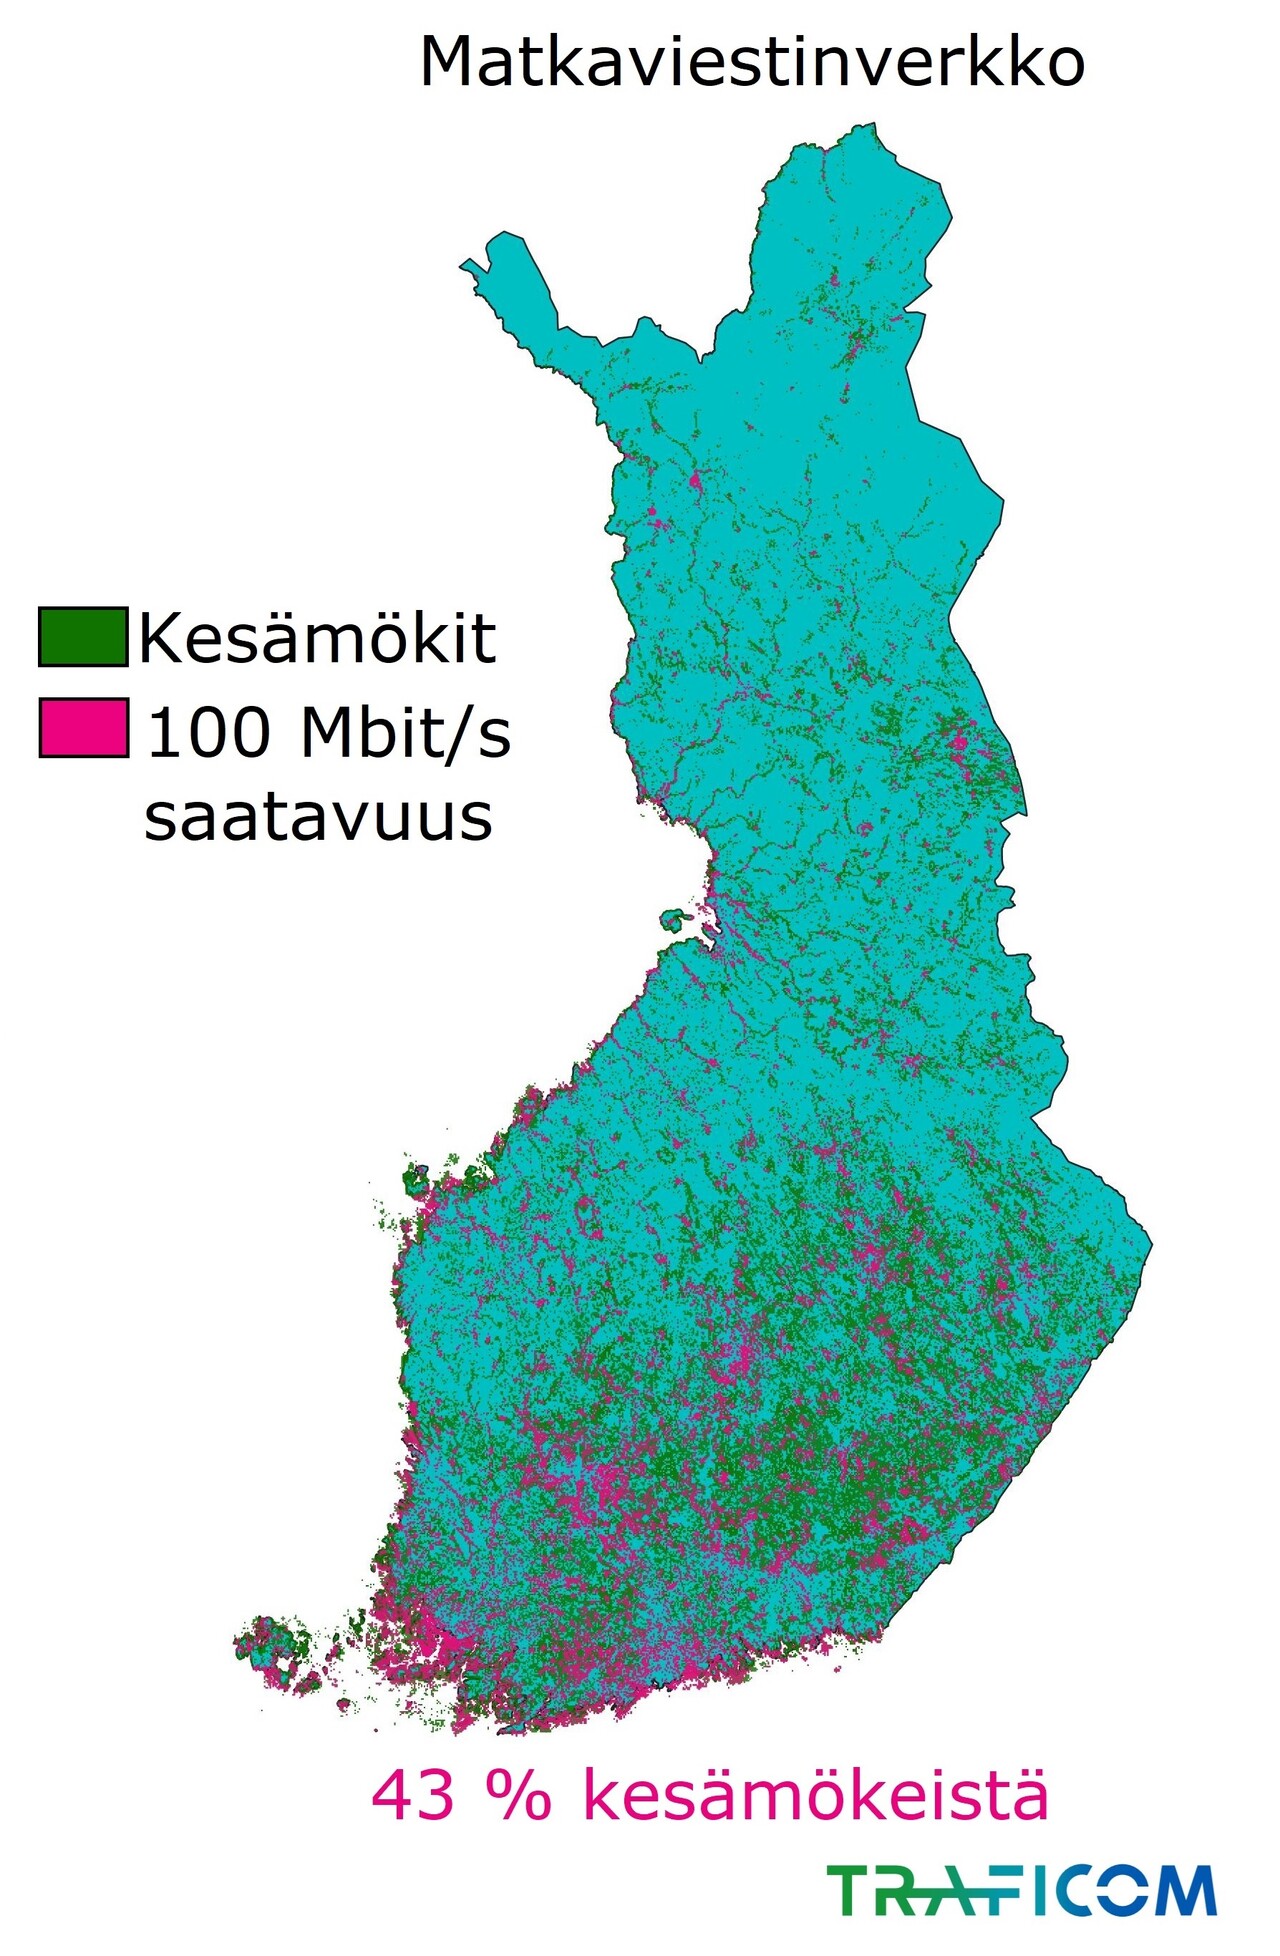 Kartalla esitetään matkaviestinverkon 100 Mbit/s saatavuus kesämökkeihin Suomessa vuoden 2020 lopussa: 43 % kesämökeistä.